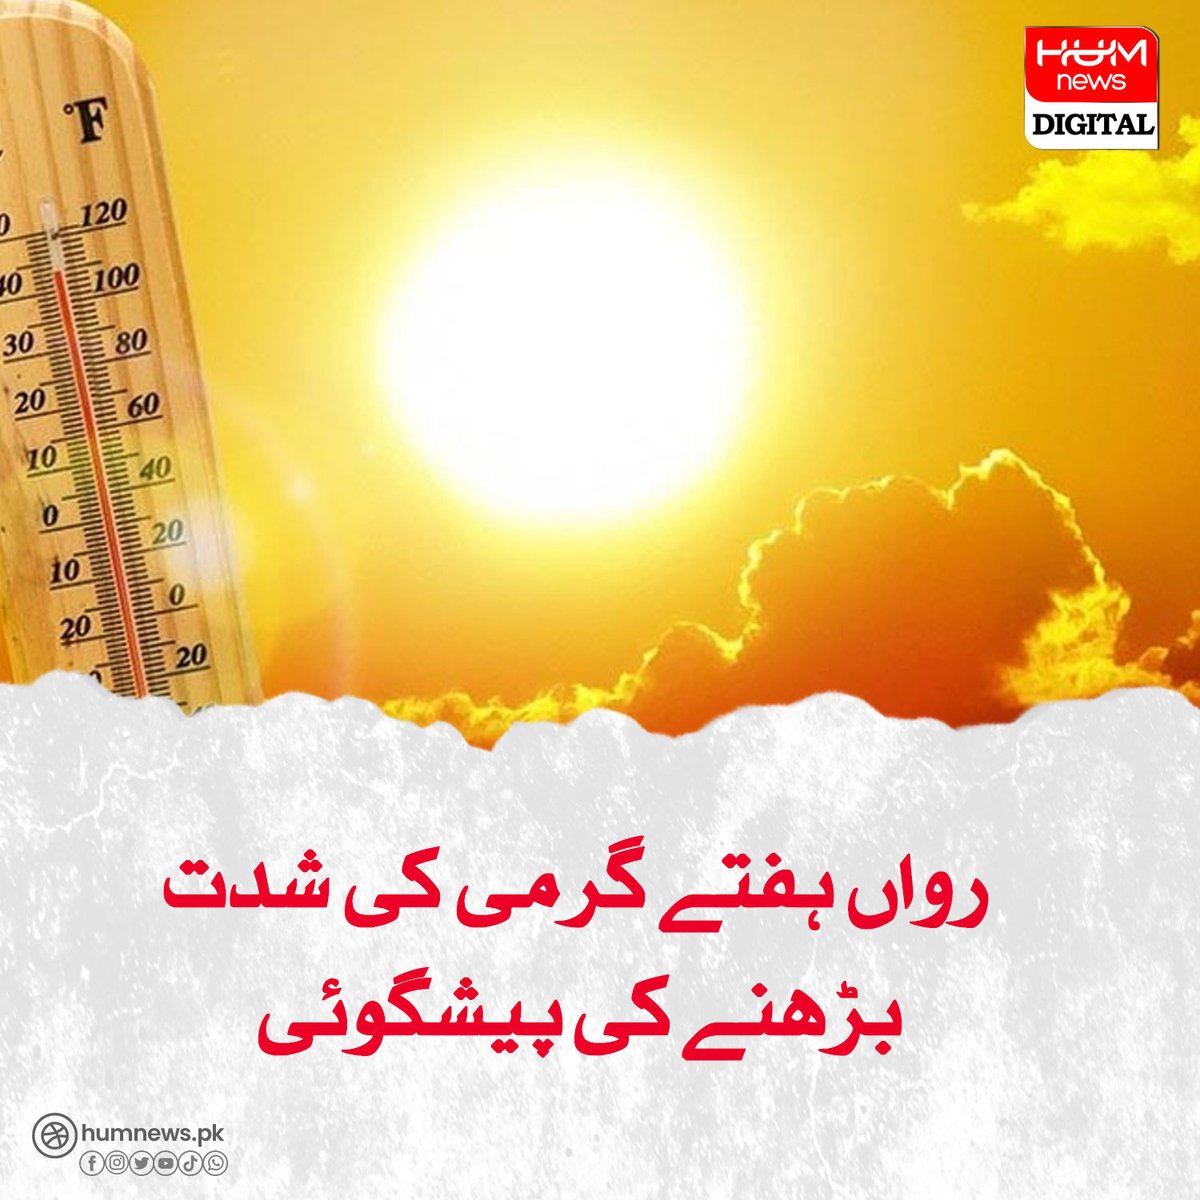 رواں ہفتے گرمی کی شدت بڑھنے کی پیشگوئی humnews.pk/latest/482323/